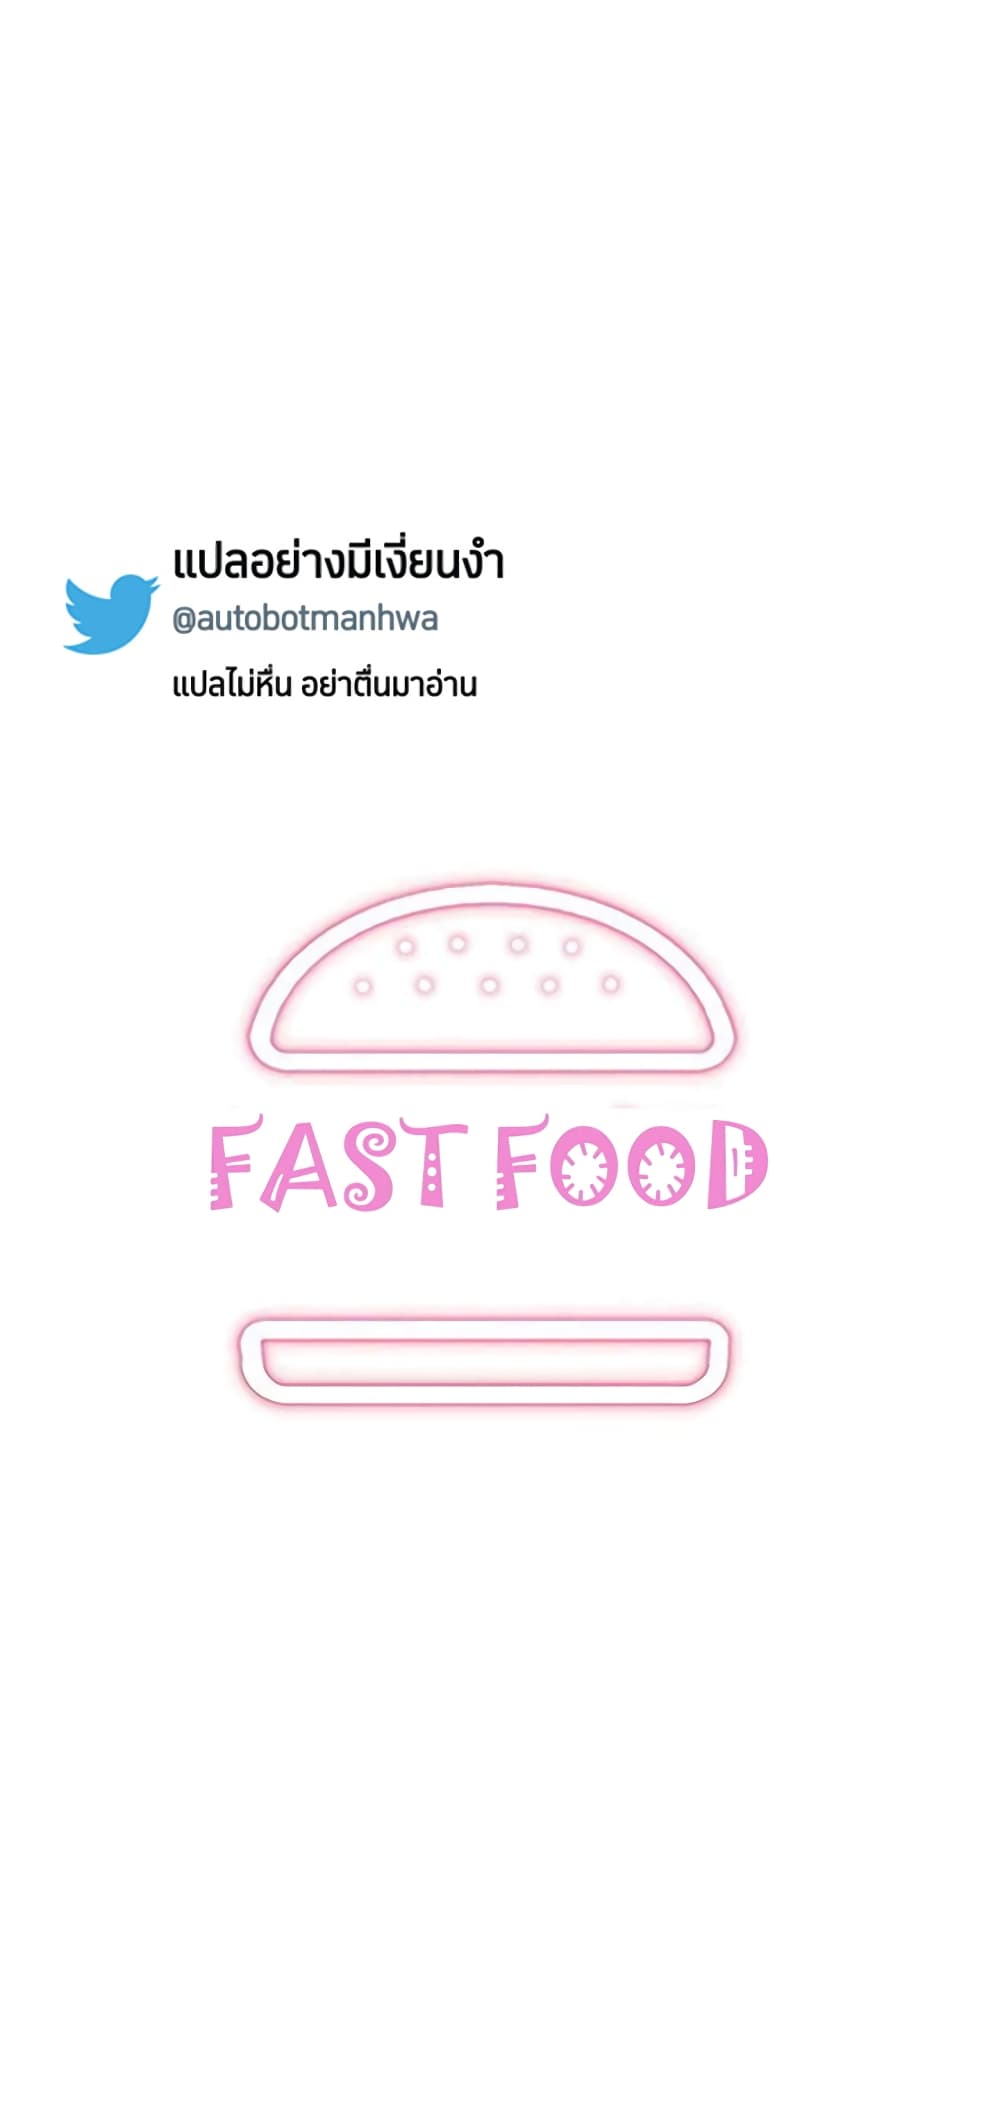 Fast Food 8-8